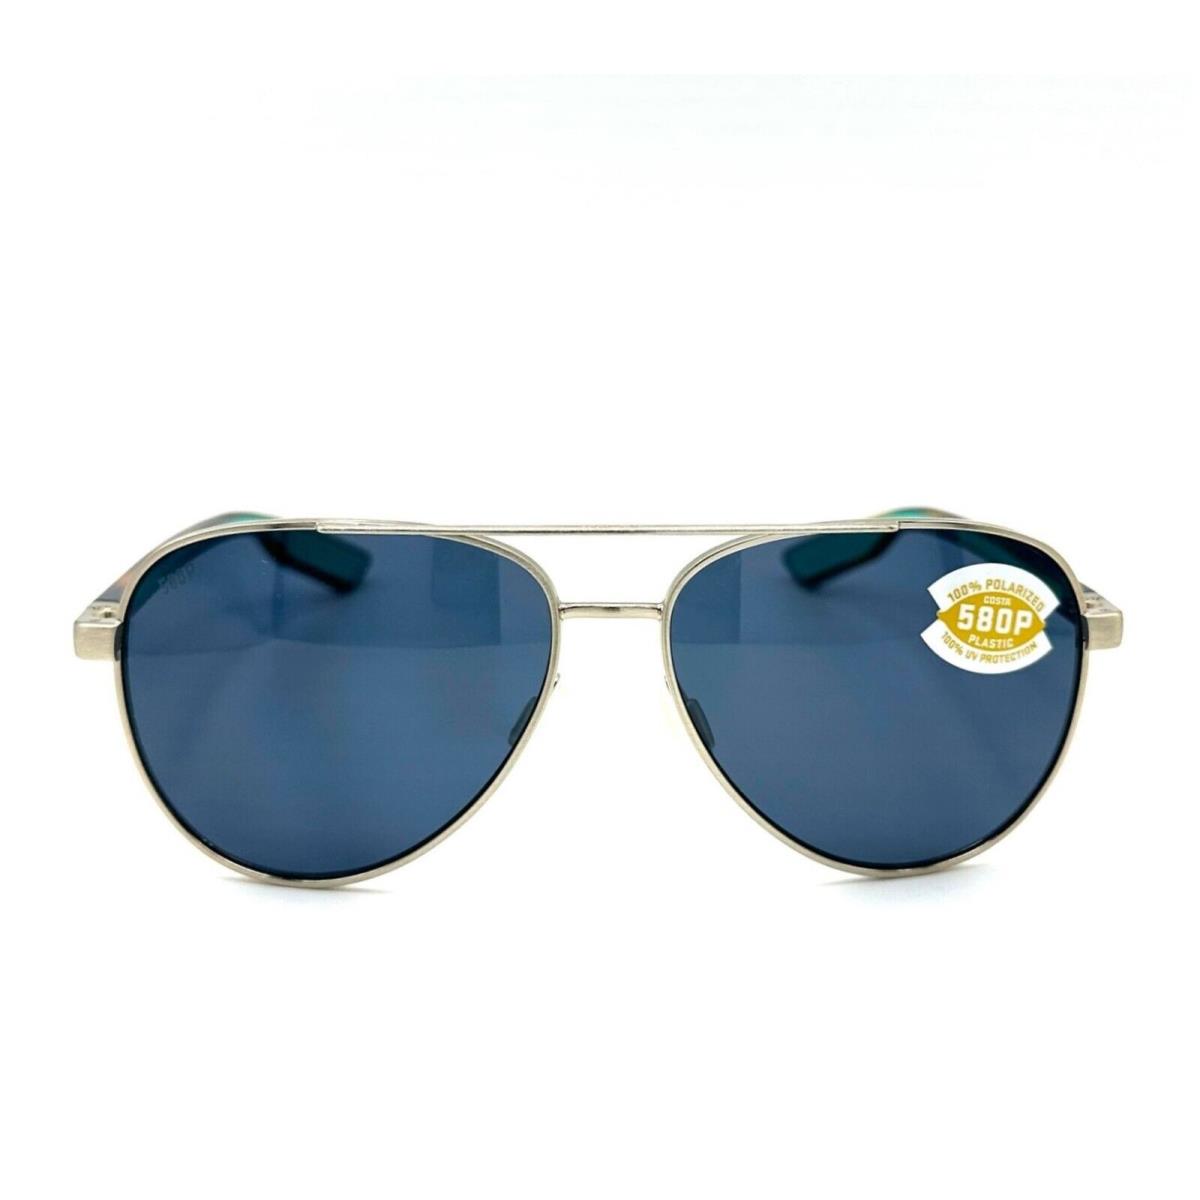 Costa Del Mar Peli Sunglasses Brushed Gold/gray 580Plastic - Brushed Gold Frame, Gray 580Plastic Lens